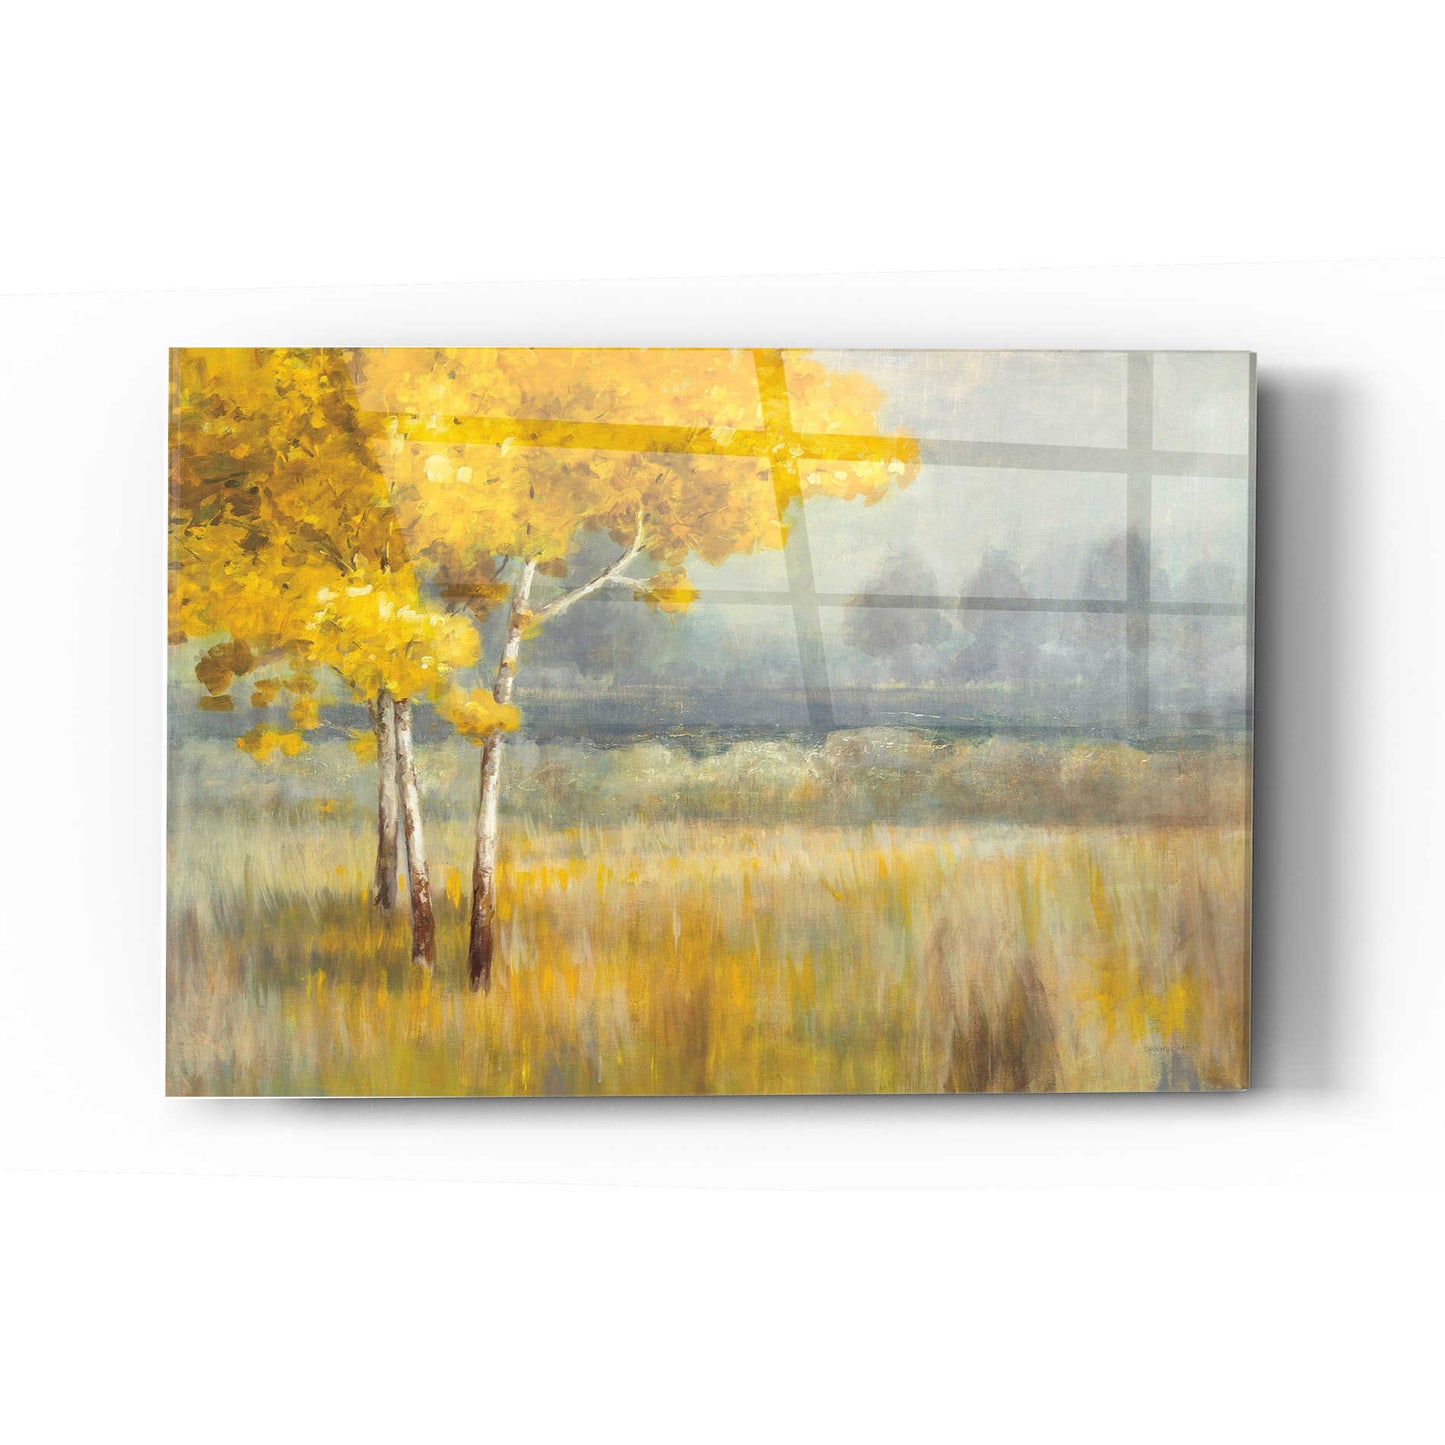 Epic Art 'Yellow Landscape' by Danhui Nai, Acrylic Glass Wall Art,16x24